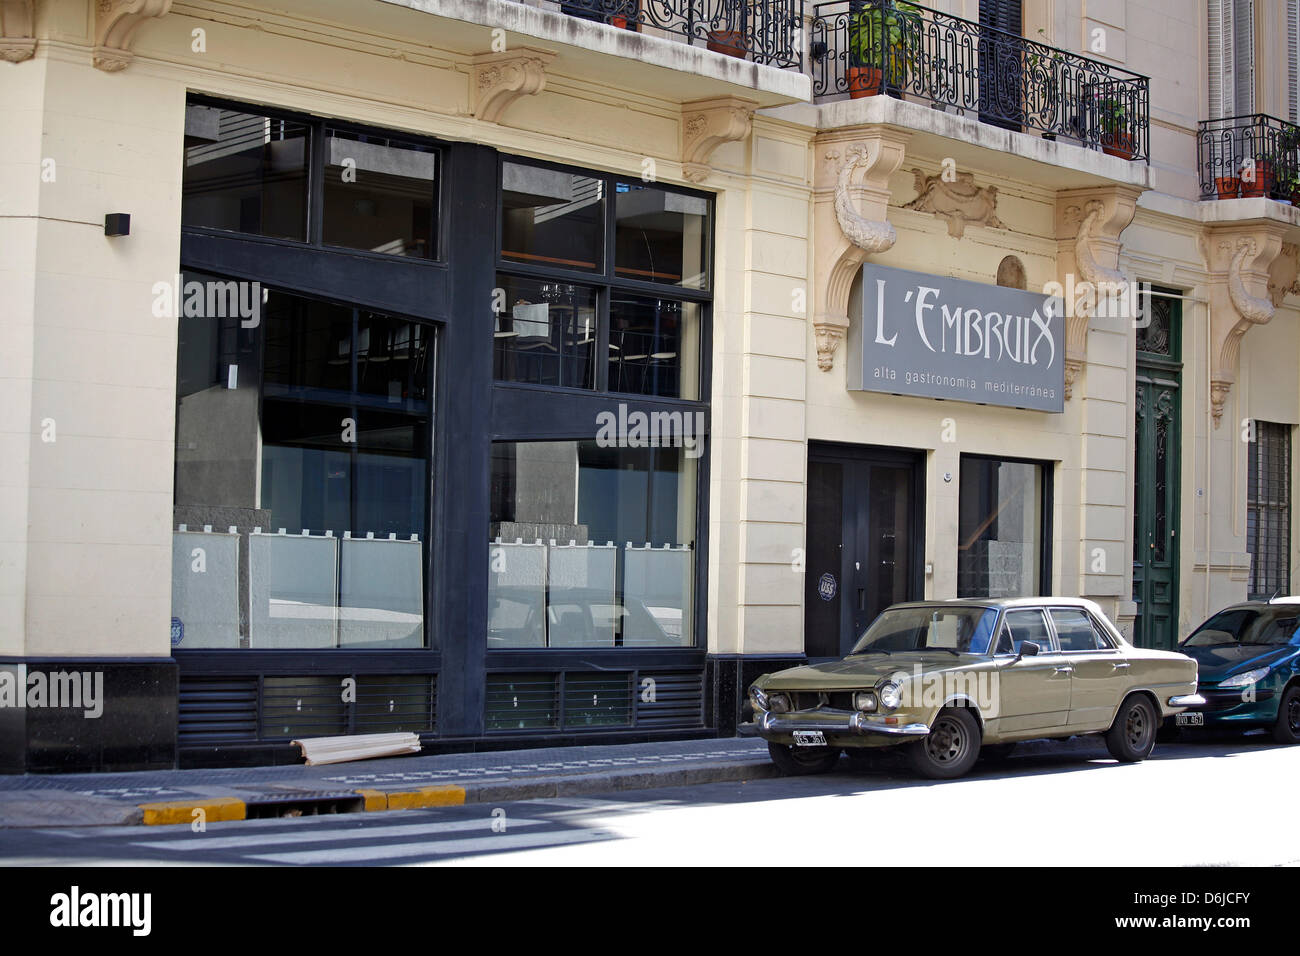 (Datei) - eine Archiv-Bild vom 16. November 2008, zeigt einen Oldtimer Parken auf einer Straße im traditionellen Viertel San Telmo in Buenos Aires, Argetina. Rund 13 Millionen Menschen leben im Großraum Metreopolitan von Buenos Aires. Foto: Jan Woitas Stockfoto